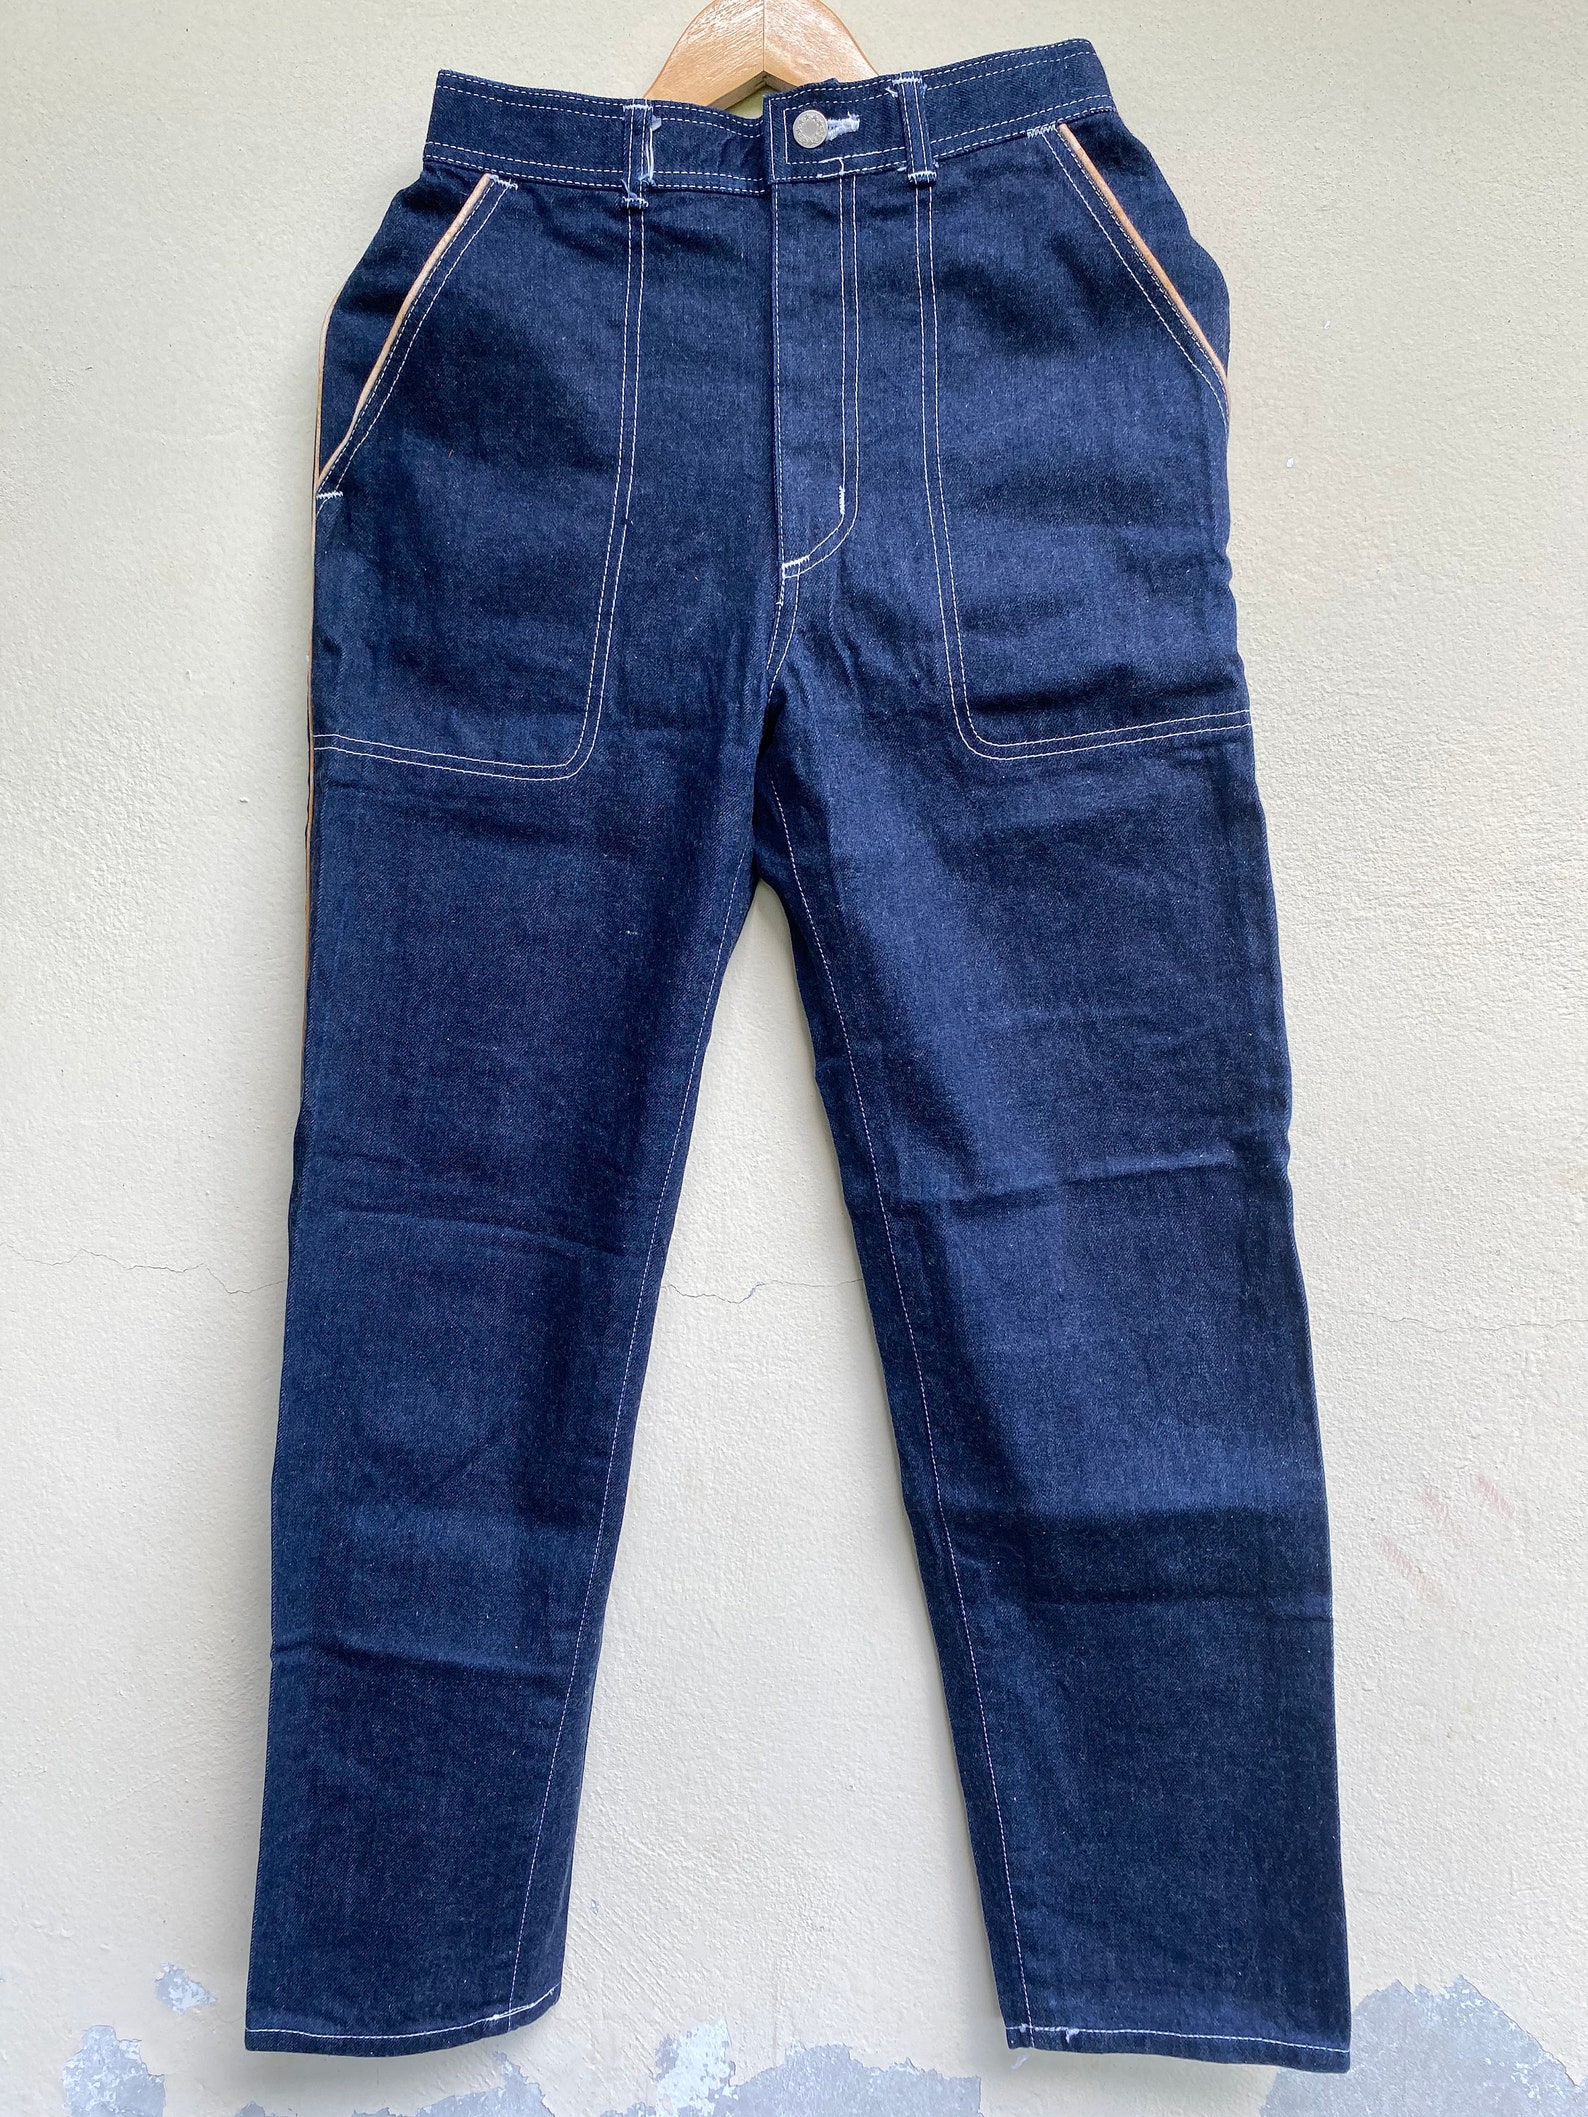 Rare Vintage Denim Jeans Kansai 2000 By Kansai Yamamoto | Etsy